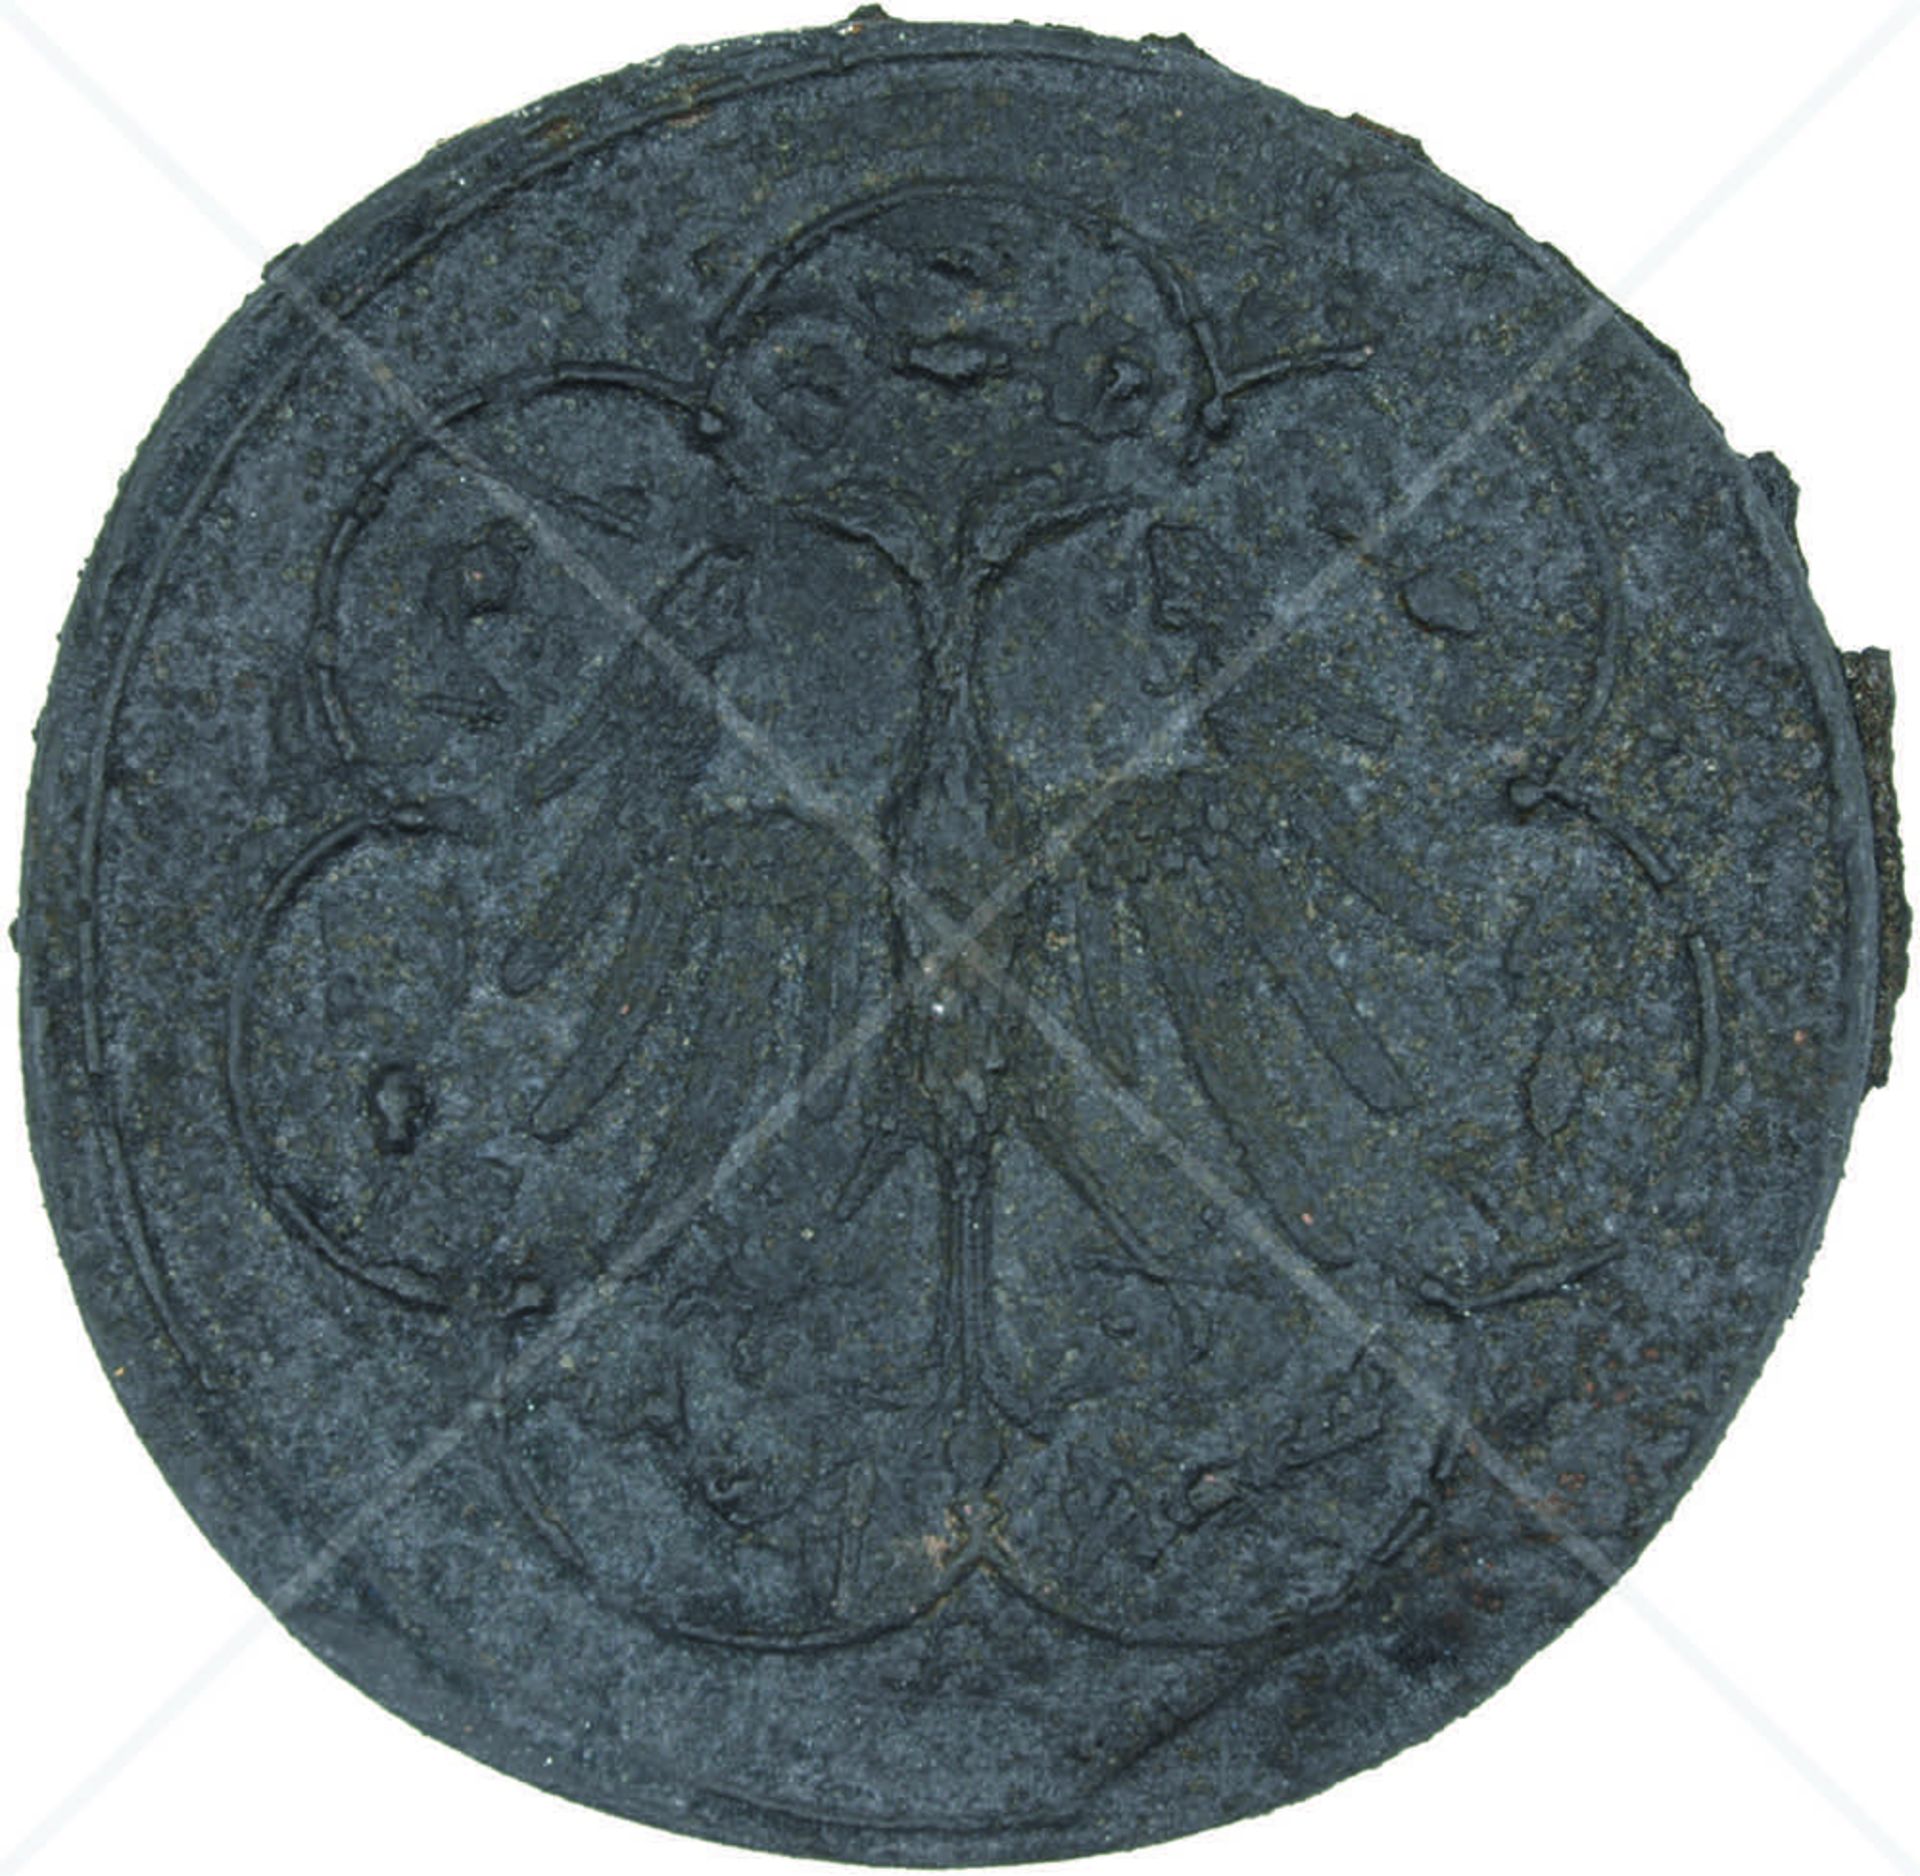 MÜNZSIEGEL KAISER FRIEDRICH III., (1415-93), doppelseitig, Abguss etwa Mitte 19. Jhd., Ø 13,5 cm, - Bild 2 aus 2